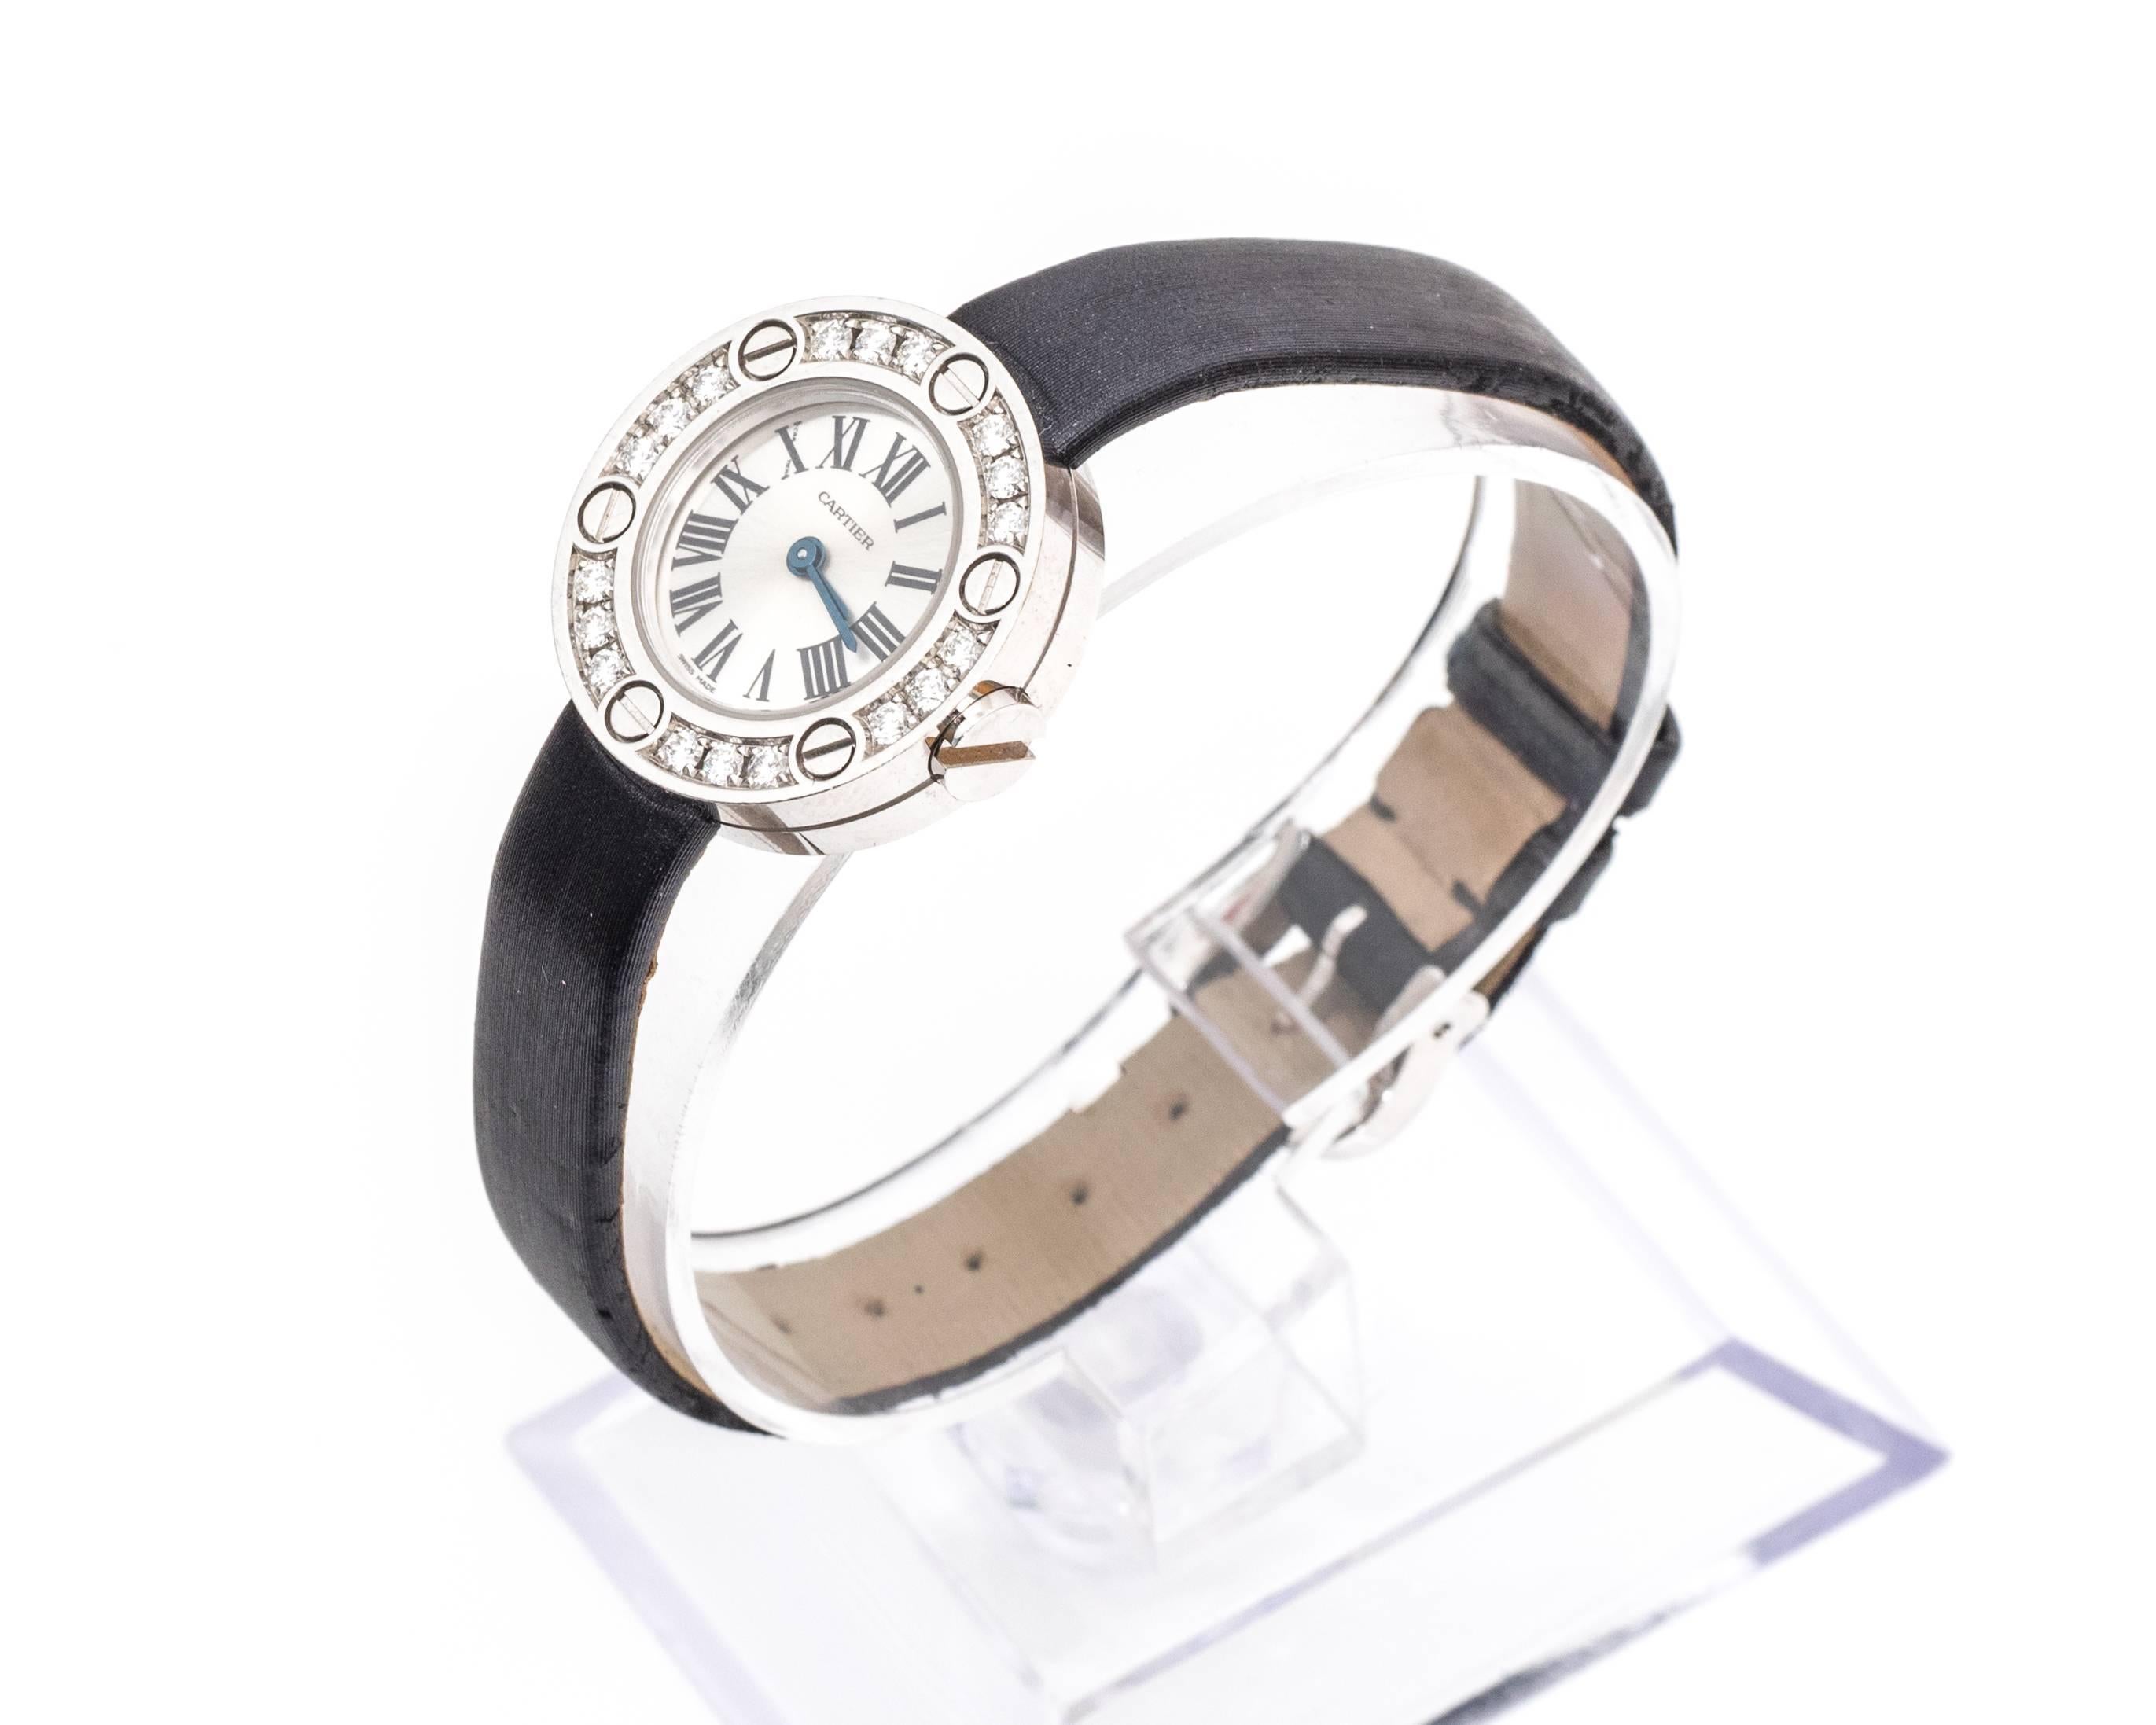 Montre-bracelet Cartier, de la série Love
or 18 carats et diamants
Bracelet en cuir noir (l'état est neuf, et peut être remplacé par un nouveau bracelet) 
Numéro de modèle WE800331
18 diamants le long de l'encadrement du cadran avec le logo Cartier